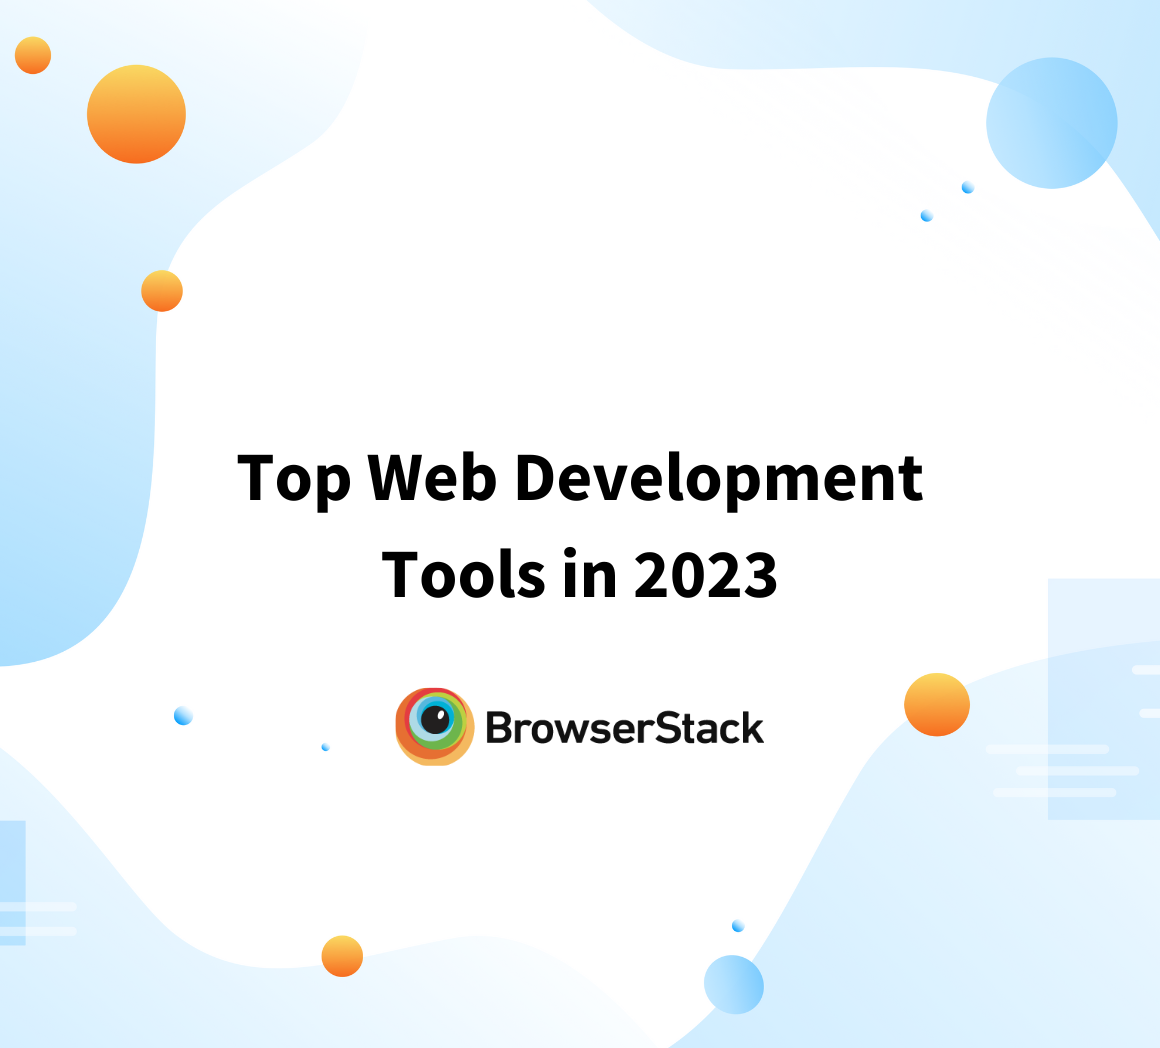 Top Web Development Tools in 2023